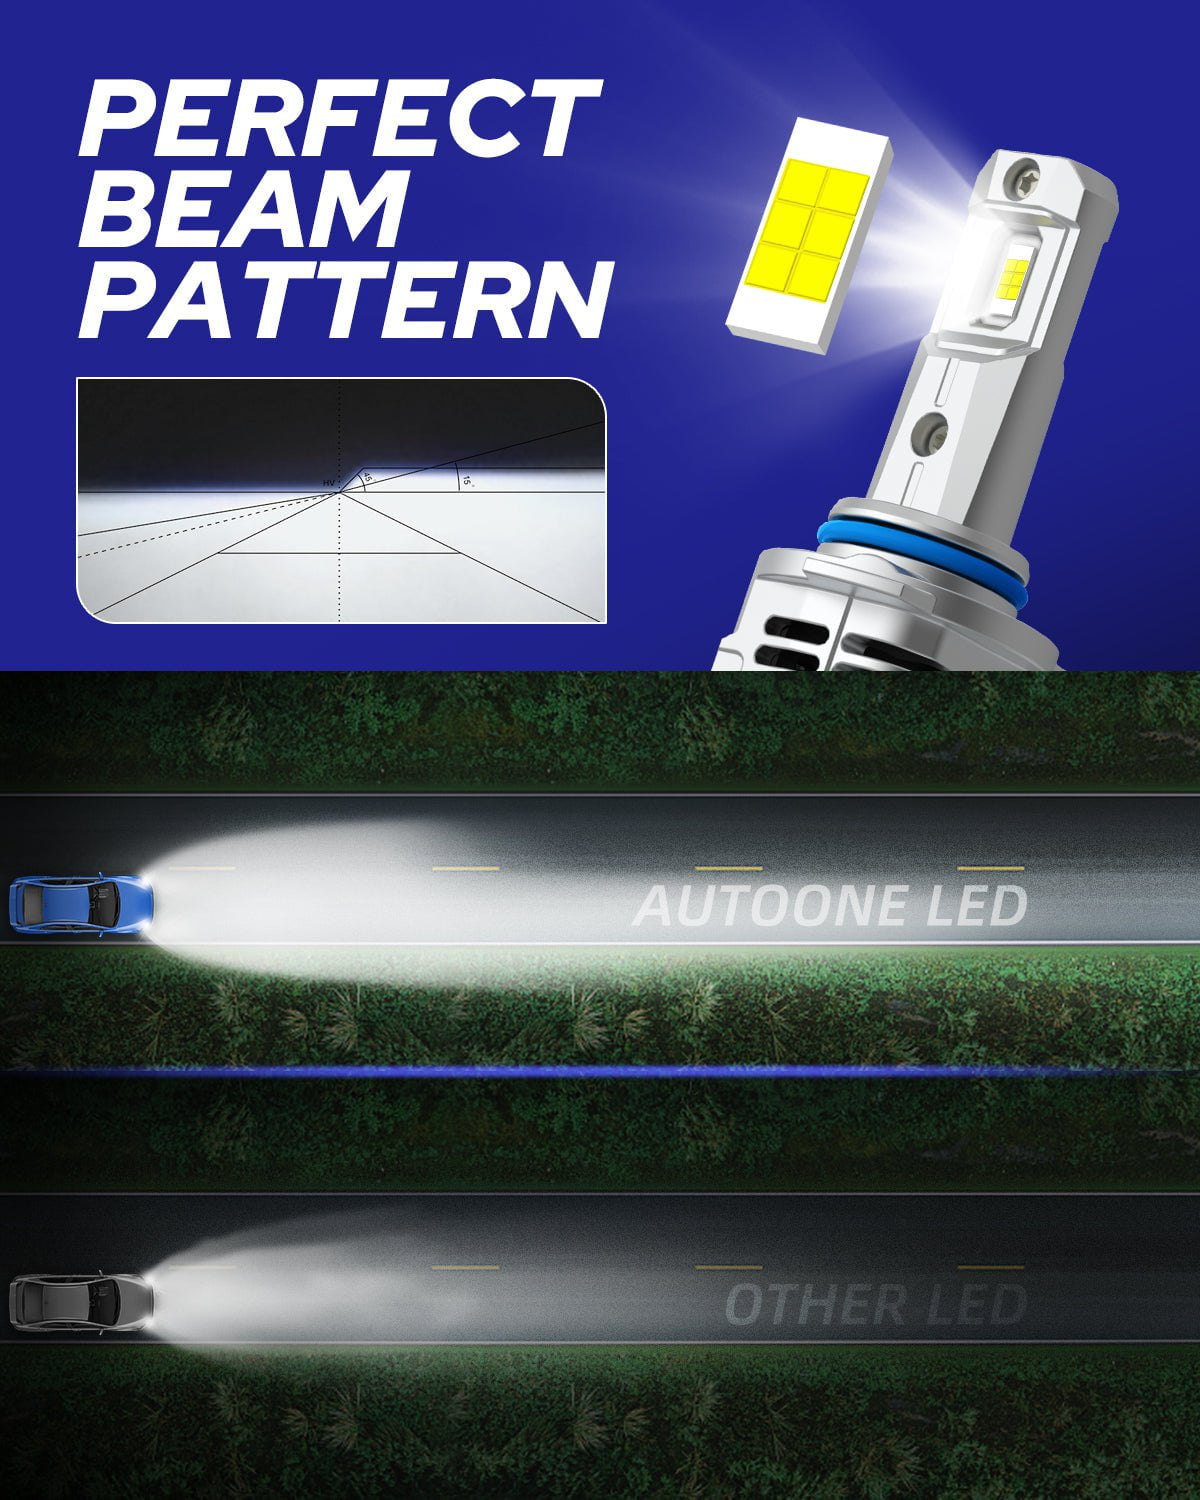 9005 HB3 LED Headlight Bulbs 12000LM 6000K White 2 PCS